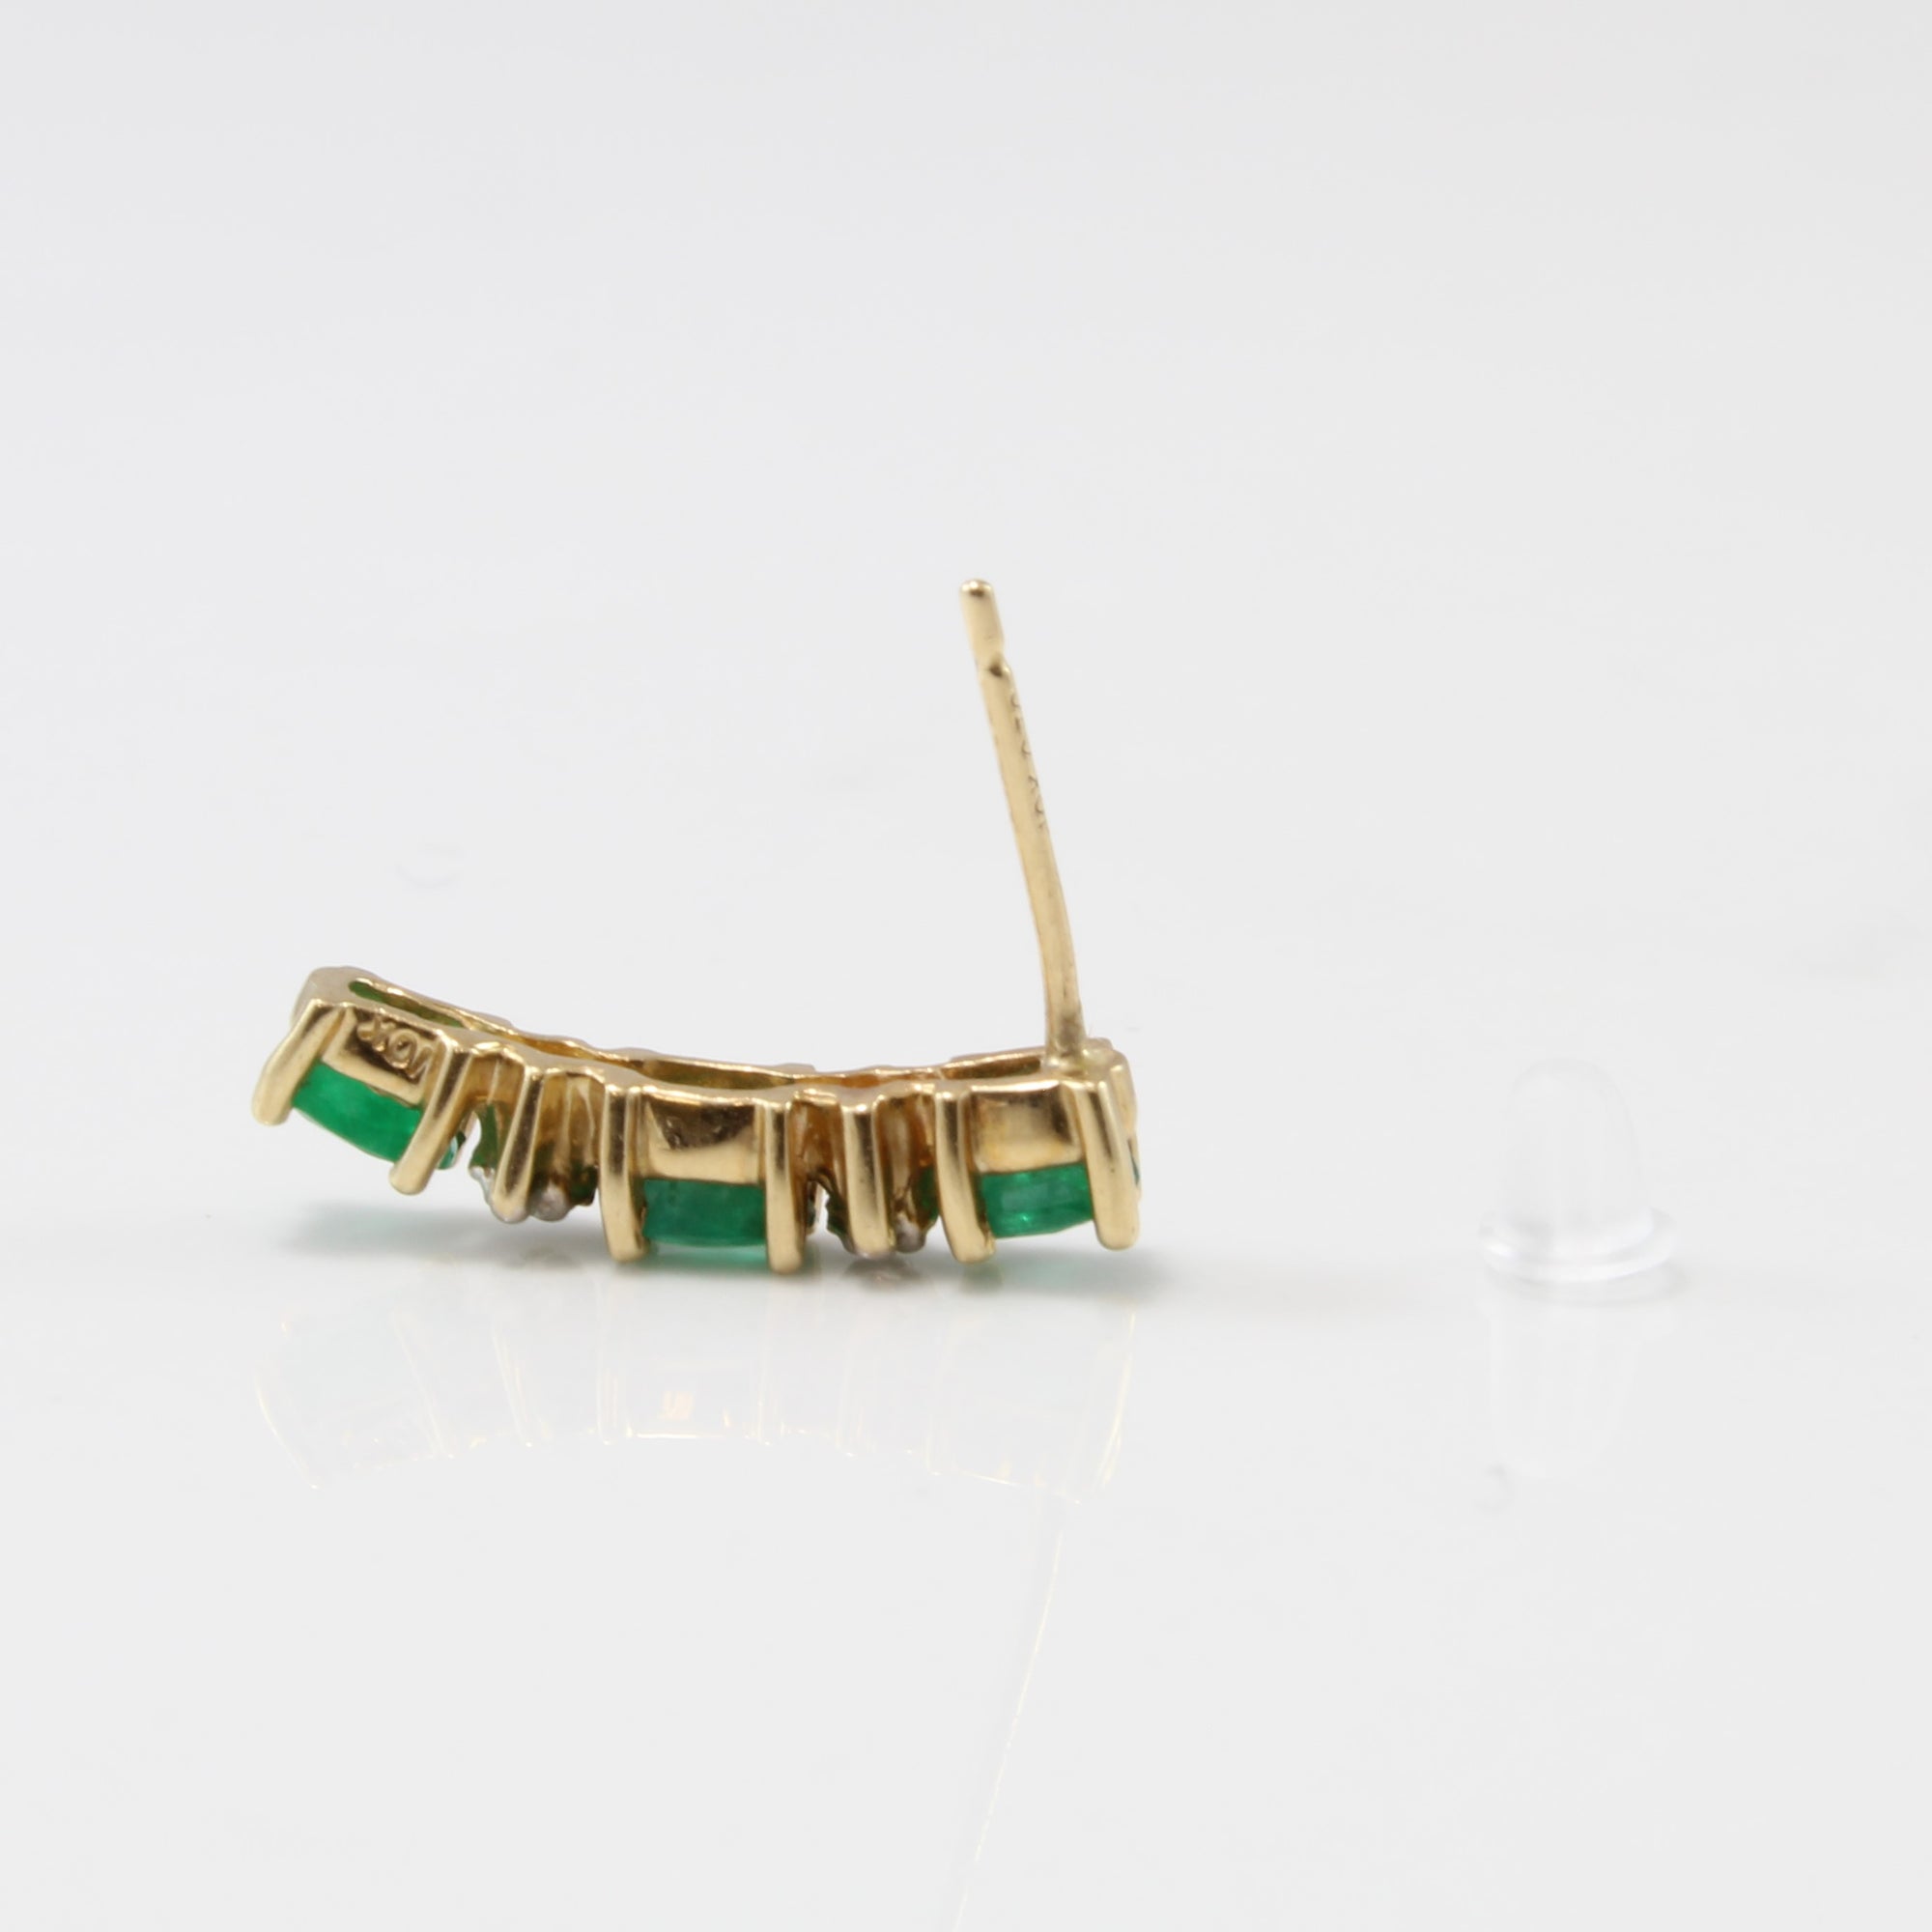 Oval Emeralds & Diamond Earrings | 0.75ctw, 0.02ctw |